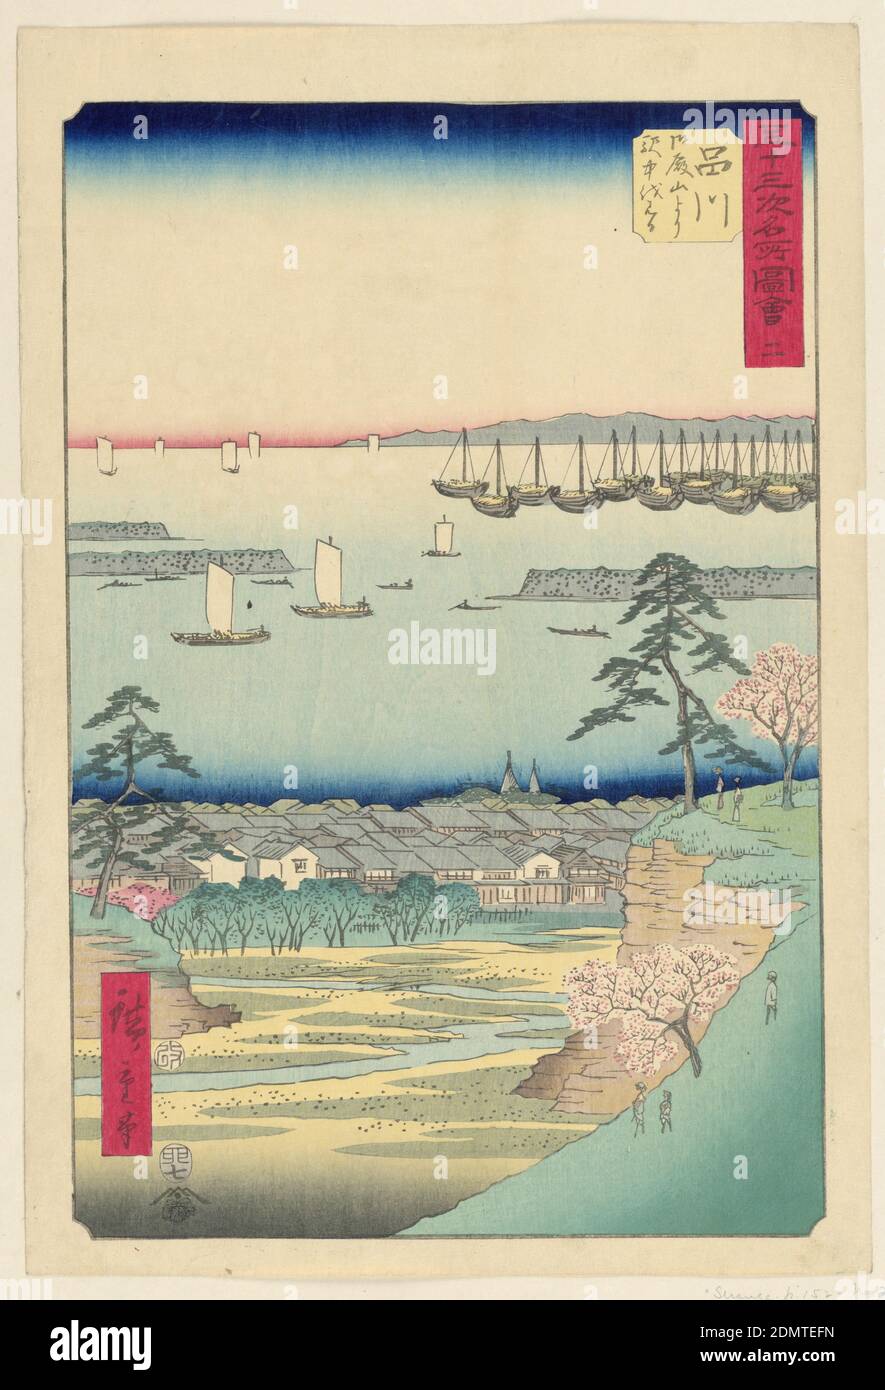 Shinagawa aus der Serie 53 Stations of Tokaido, Ando Hiroshige, japanisch, 1797–1858, Holzblock-Druck in farbiger Tinte auf Papier, Hirogshige: Herausgegeben zwischen Tsuta-ya Kichizo (ca. 1800s-60s). Aratame [genehmigt] Siegel plus Jahresmonatsrobbe: Hare VII [1855]. Signatur: Hiroshige ga: Ein Blick im Vordergrund enthält drei Figuren und blühende Kirschblütenbäume, die auf einen Fluss blicken, auf einen winzigen Wald und Dächer einer kleinen Stadt. Der mittlere Boden zeigt verschiedene Segelboote und Schiffe, die auf See segeln. Am Horizont unterhalb der blauen Skyline befindet sich eine kleine Berg-Silhouette Stockfoto